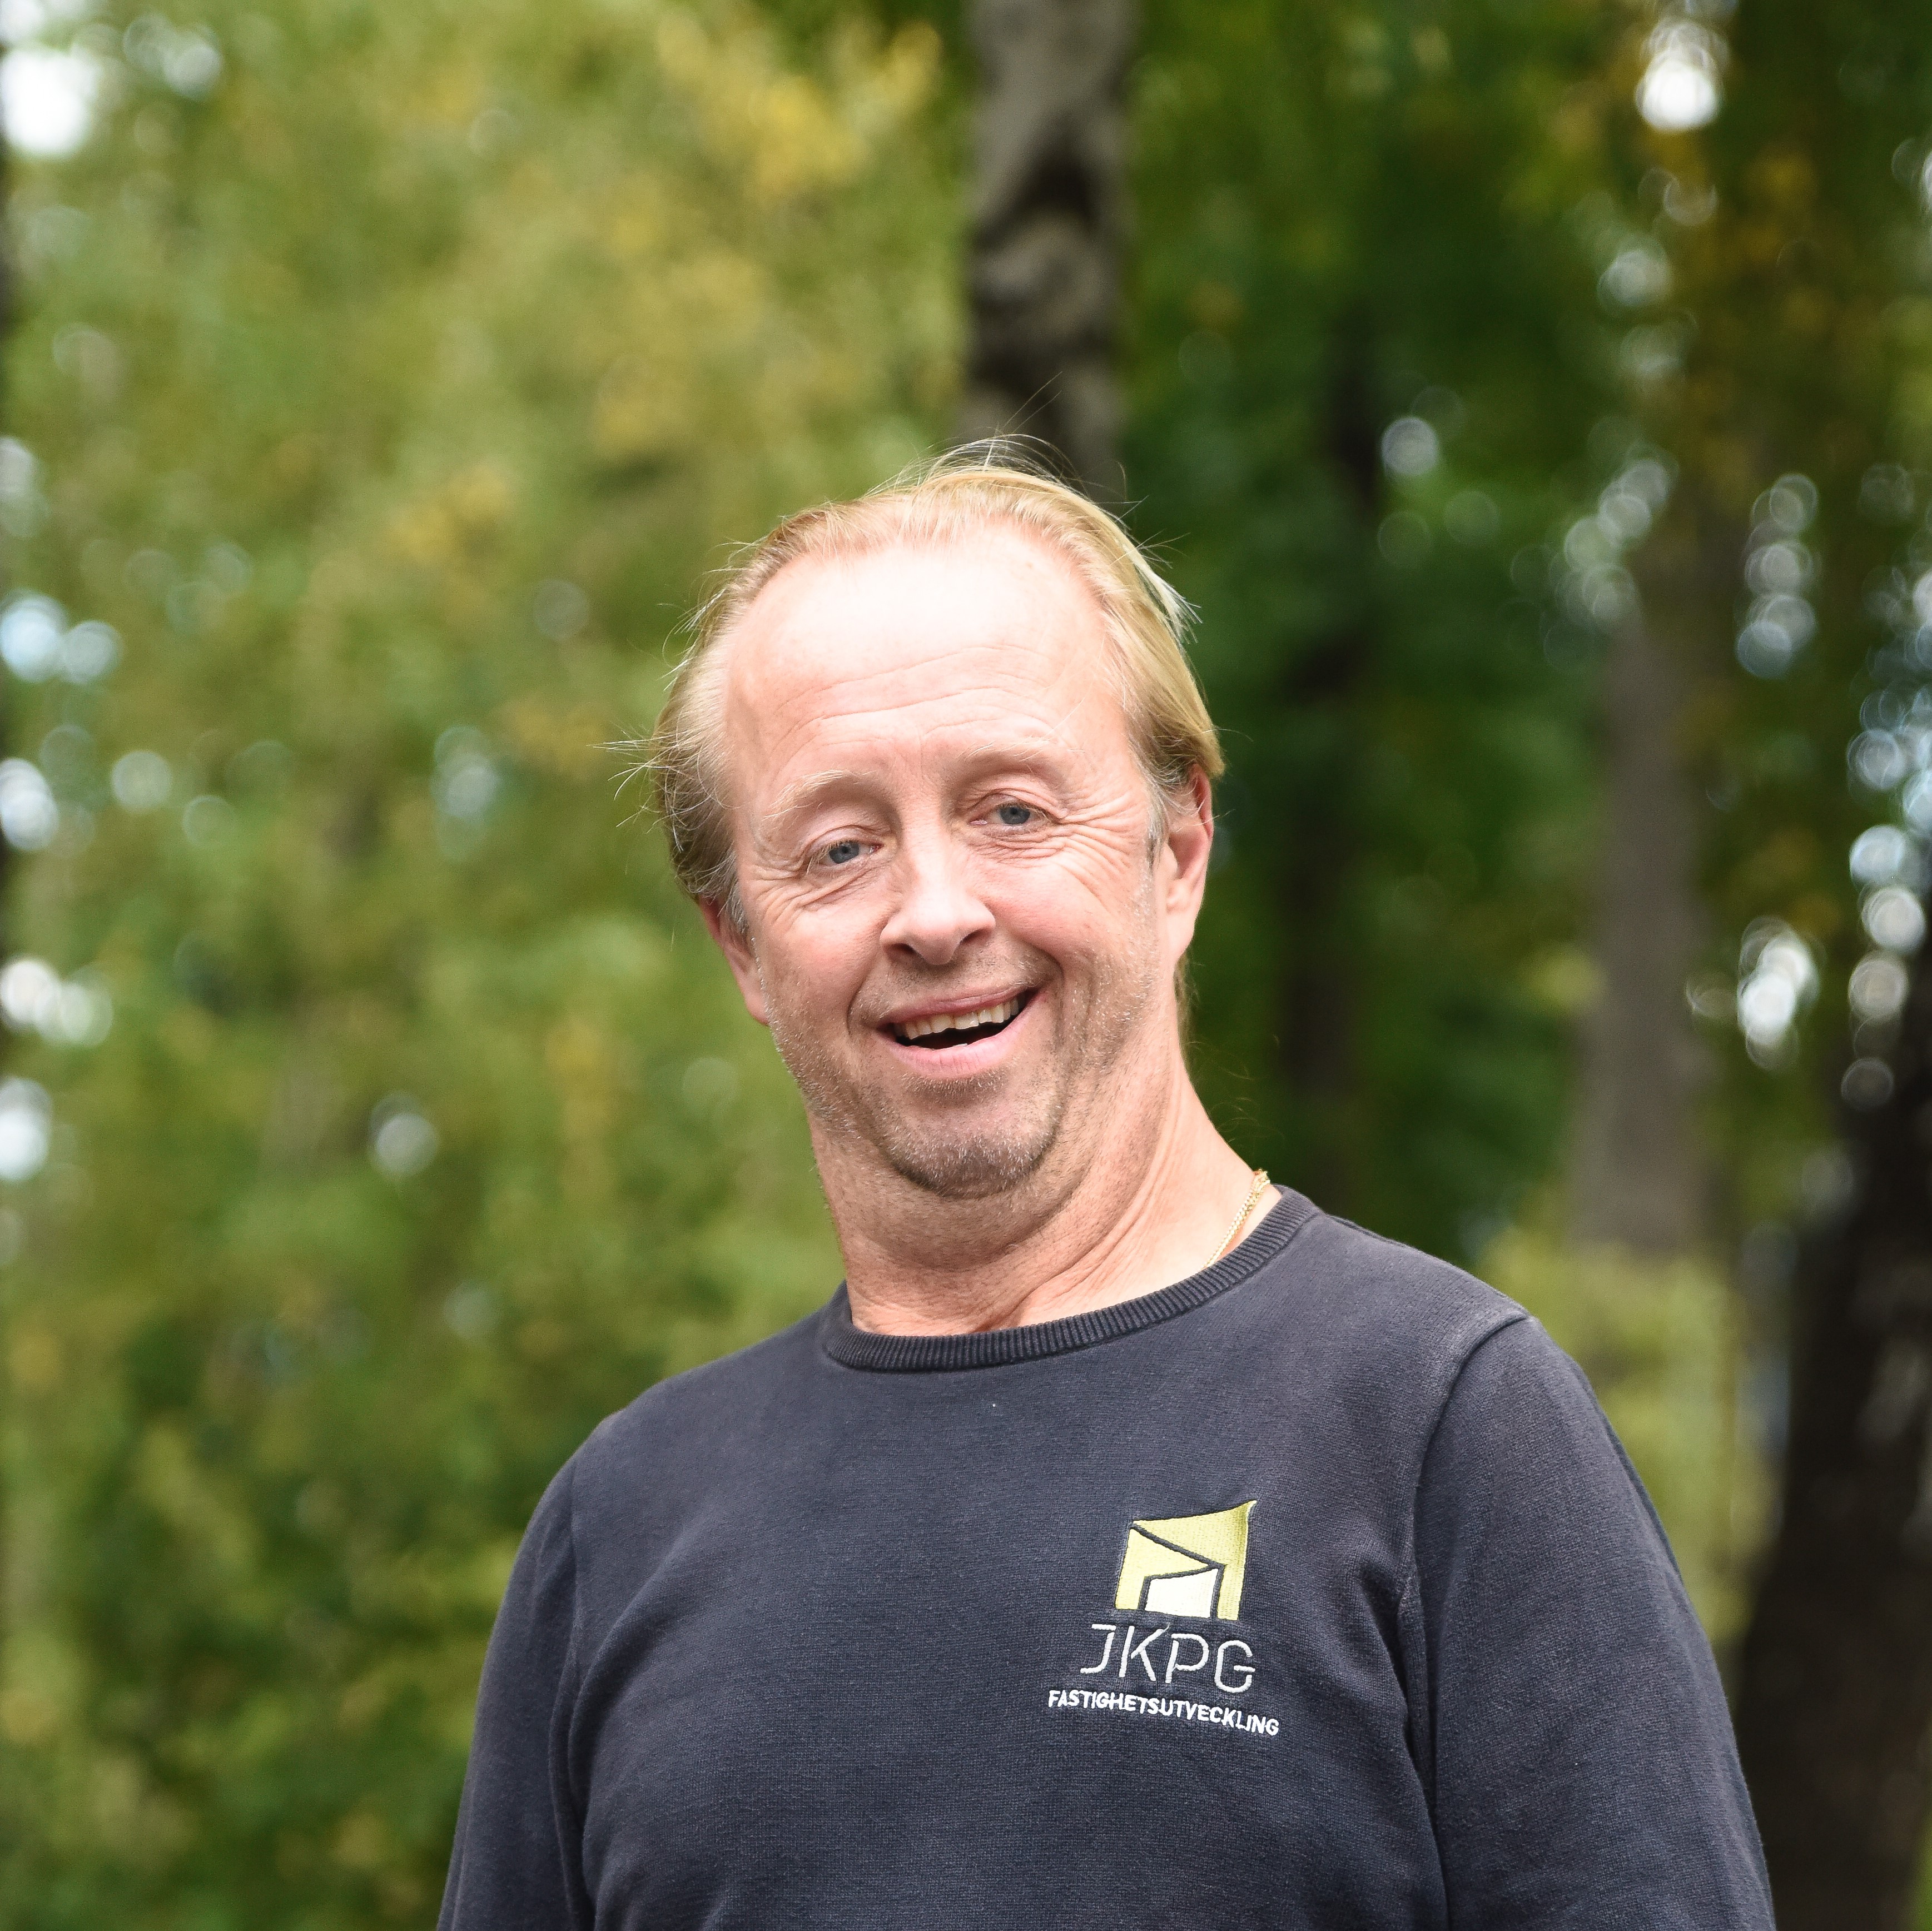 Mats Ottosson, Vaktmästare JKPG Fast.